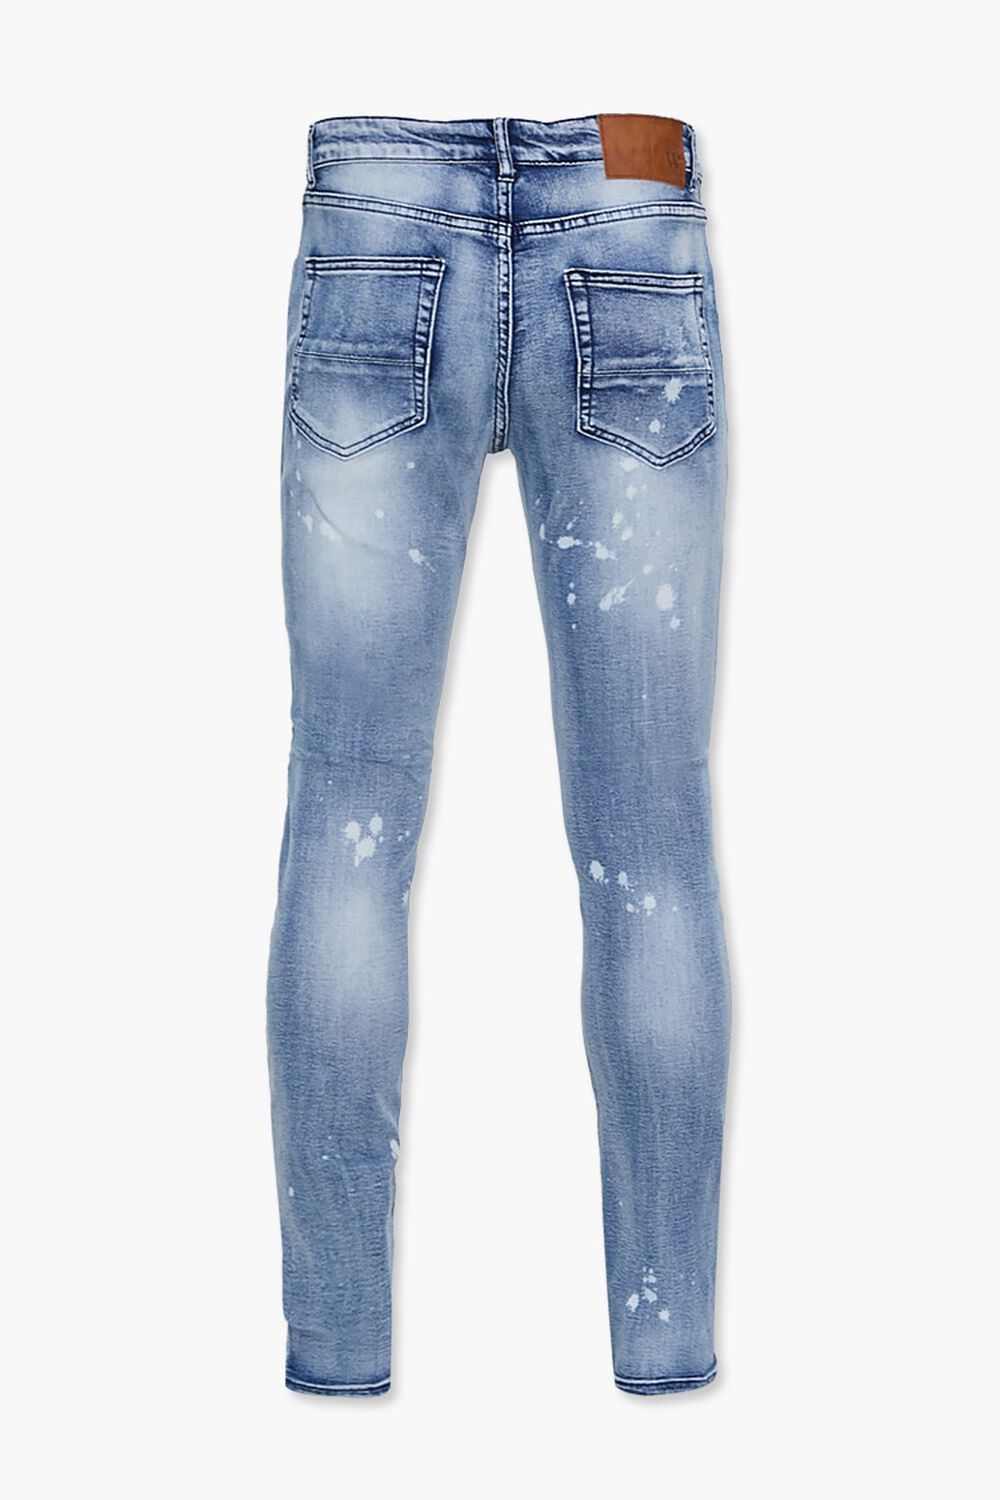 Forever 21 Reason Paint Splatter Jeans